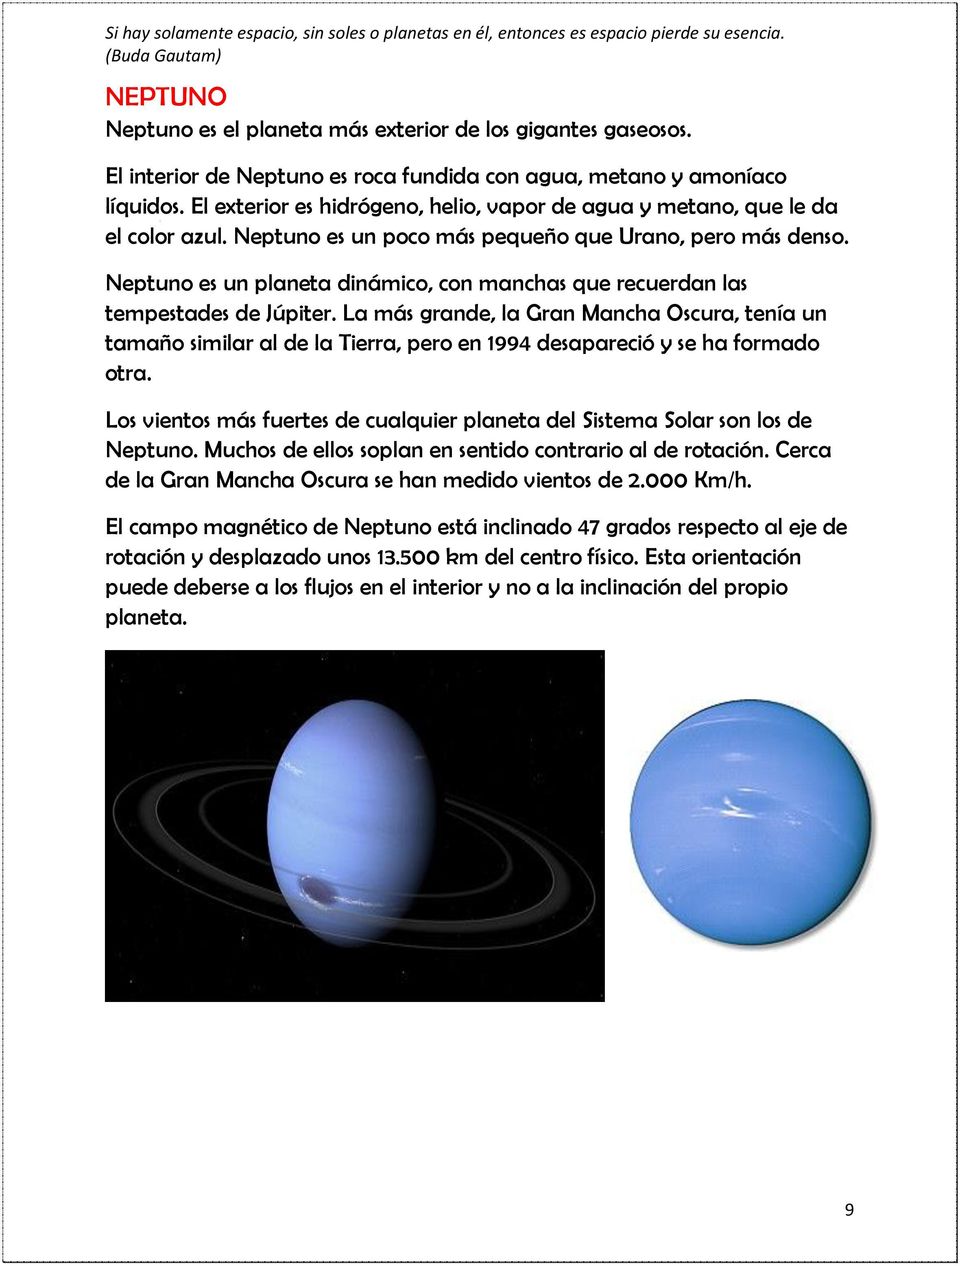 Neptuno es un planeta dinámico, con manchas que recuerdan las tempestades de Júpiter.